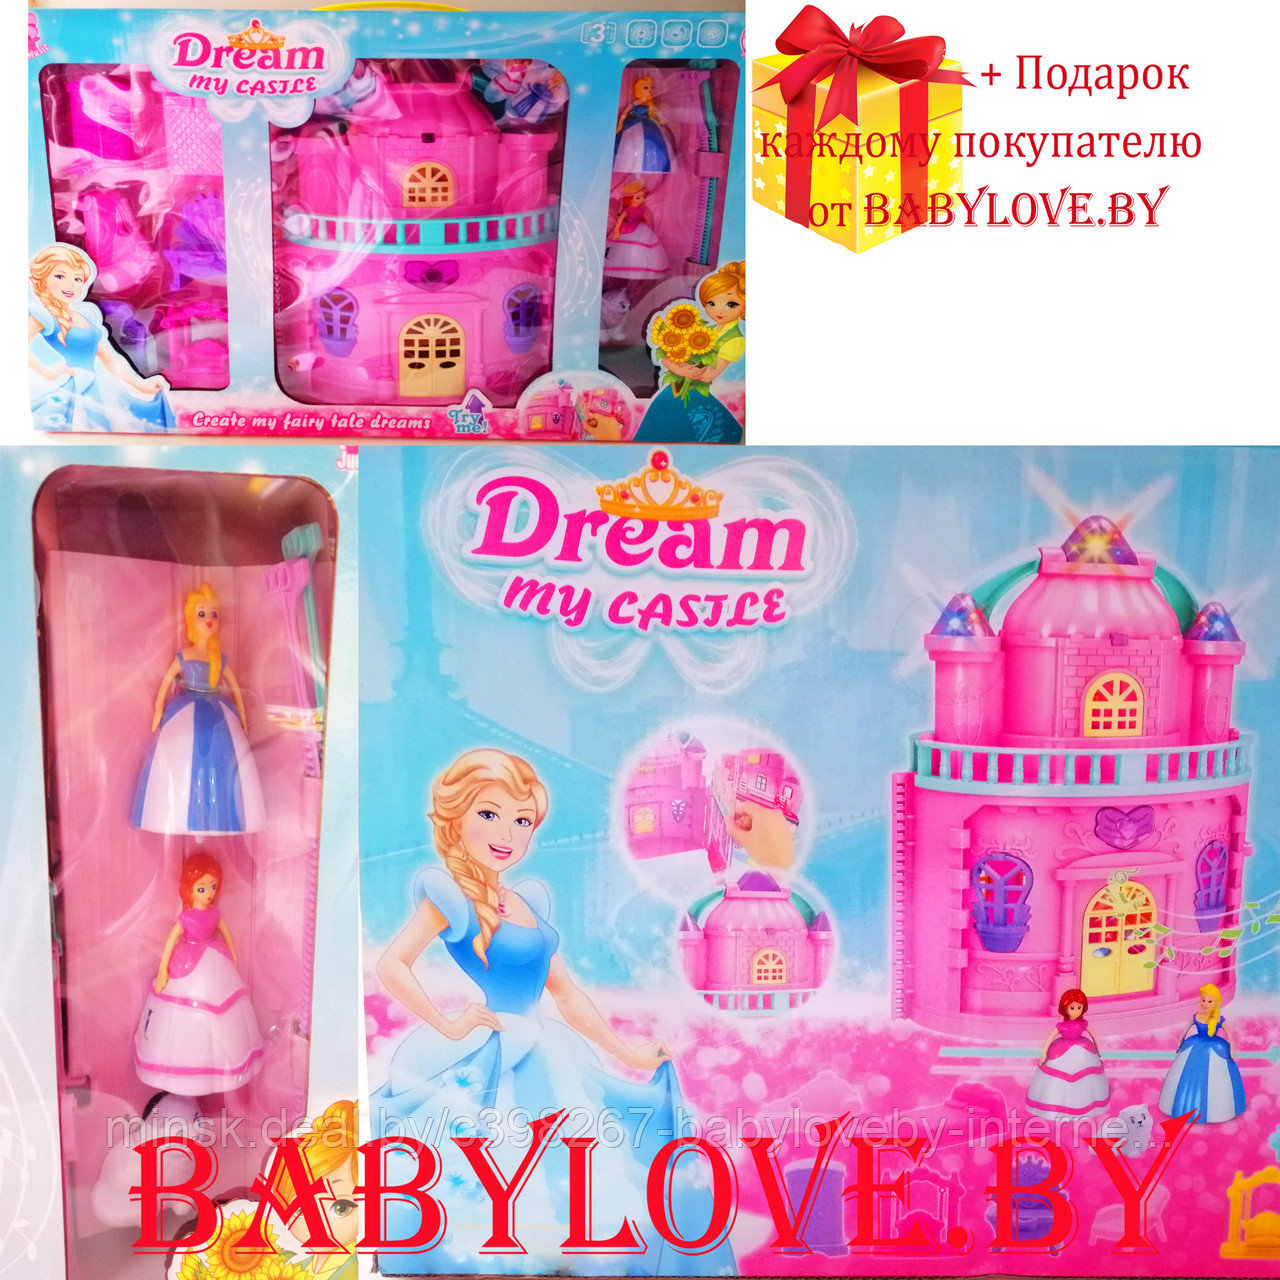 Кукольный домик замок Dream my castele CB889-1 с мебелью и куклами свет+ звук